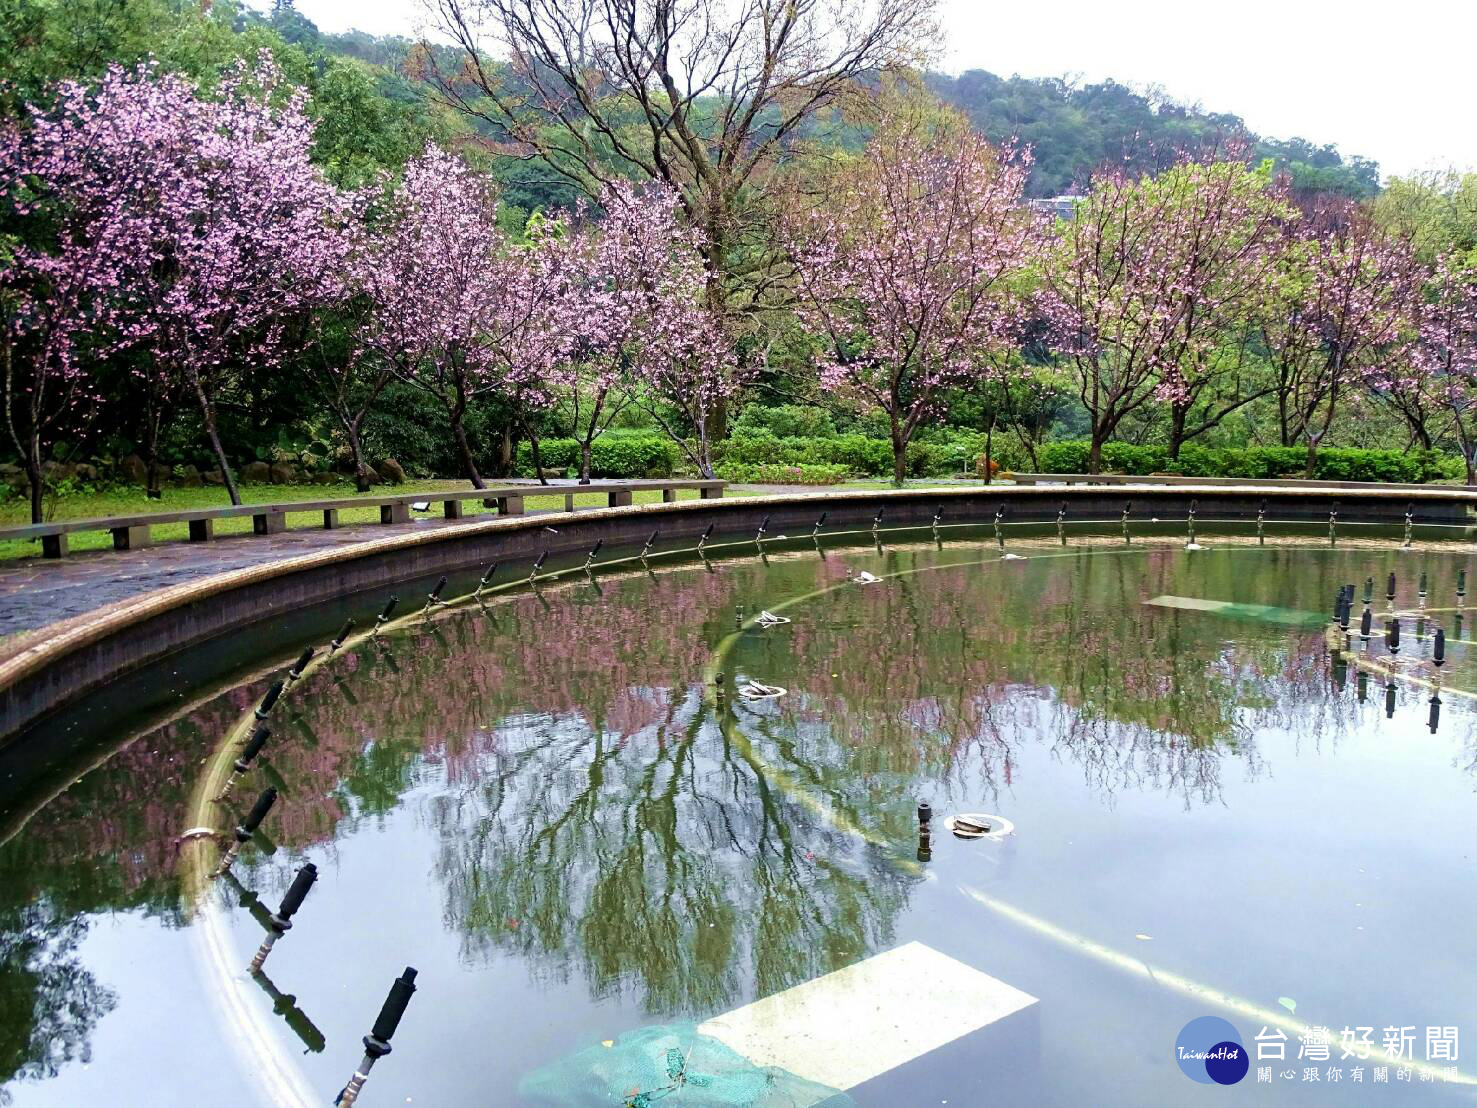 噴水池的昭和櫻倒影與櫻花相映成趣